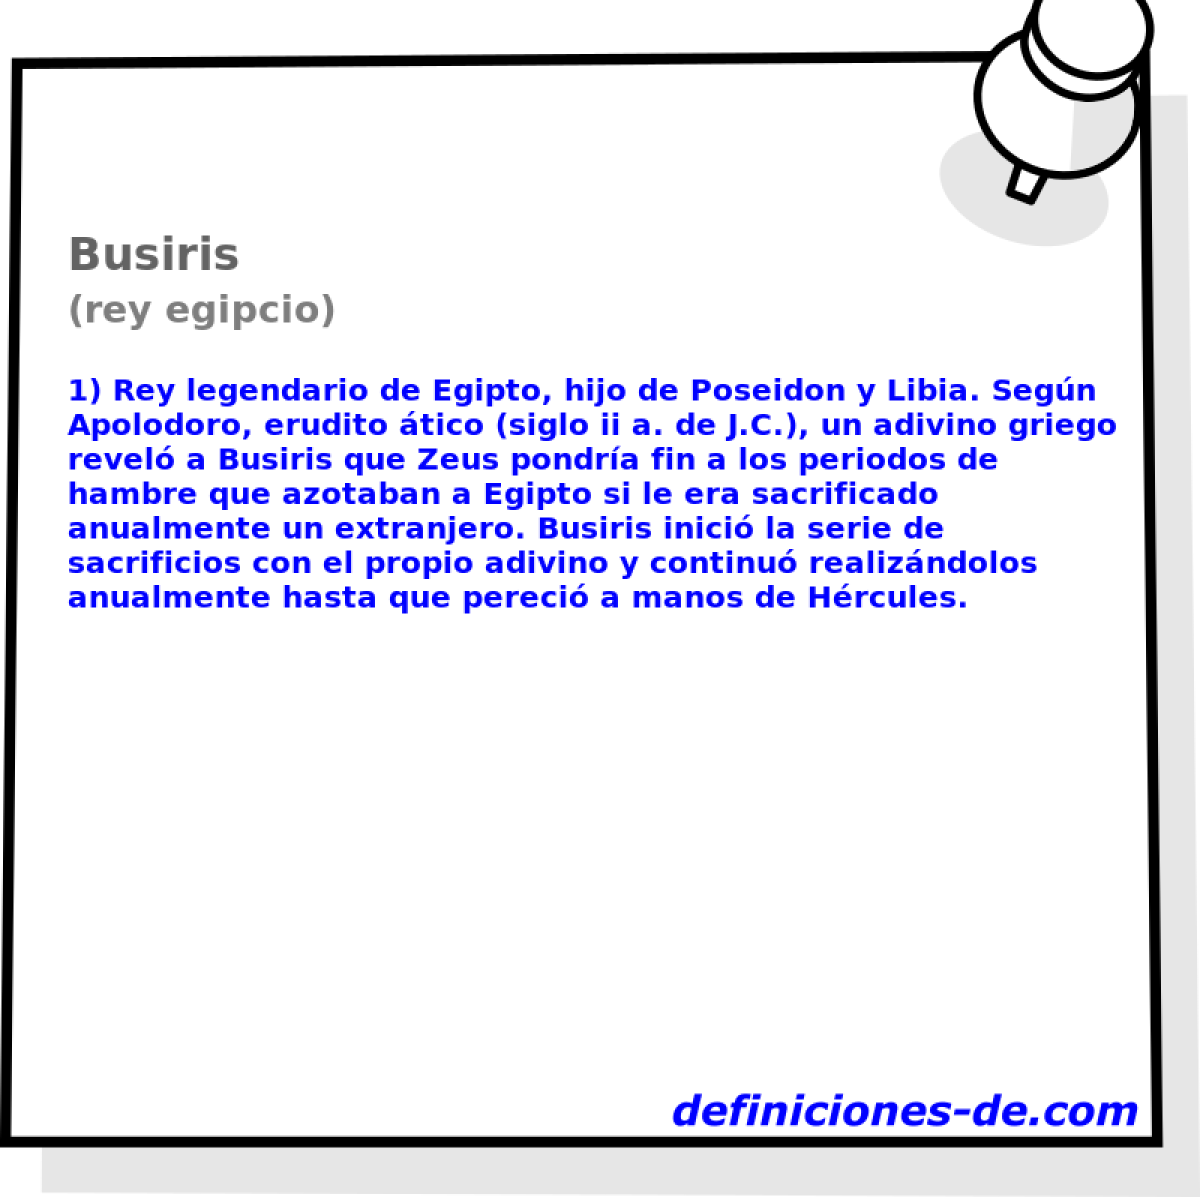 Busiris (rey egipcio)